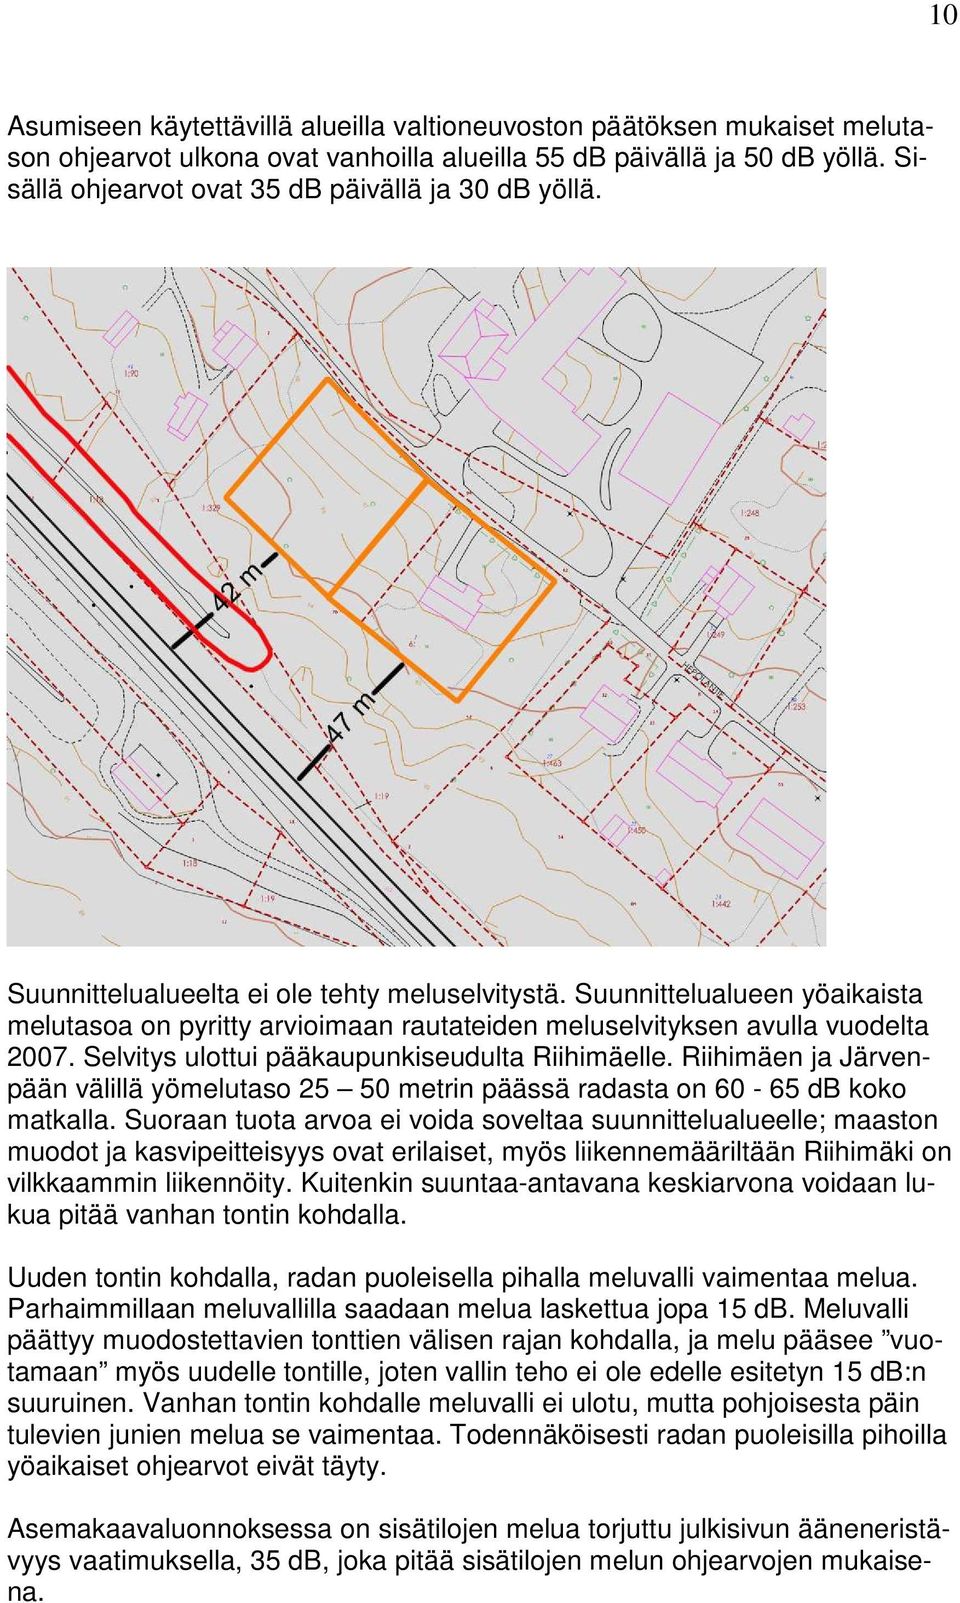 Suunnittelualueen yöaikaista melutasoa on pyritty arvioimaan rautateiden meluselvityksen avulla vuodelta 2007. Selvitys ulottui pääkaupunkiseudulta Riihimäelle.